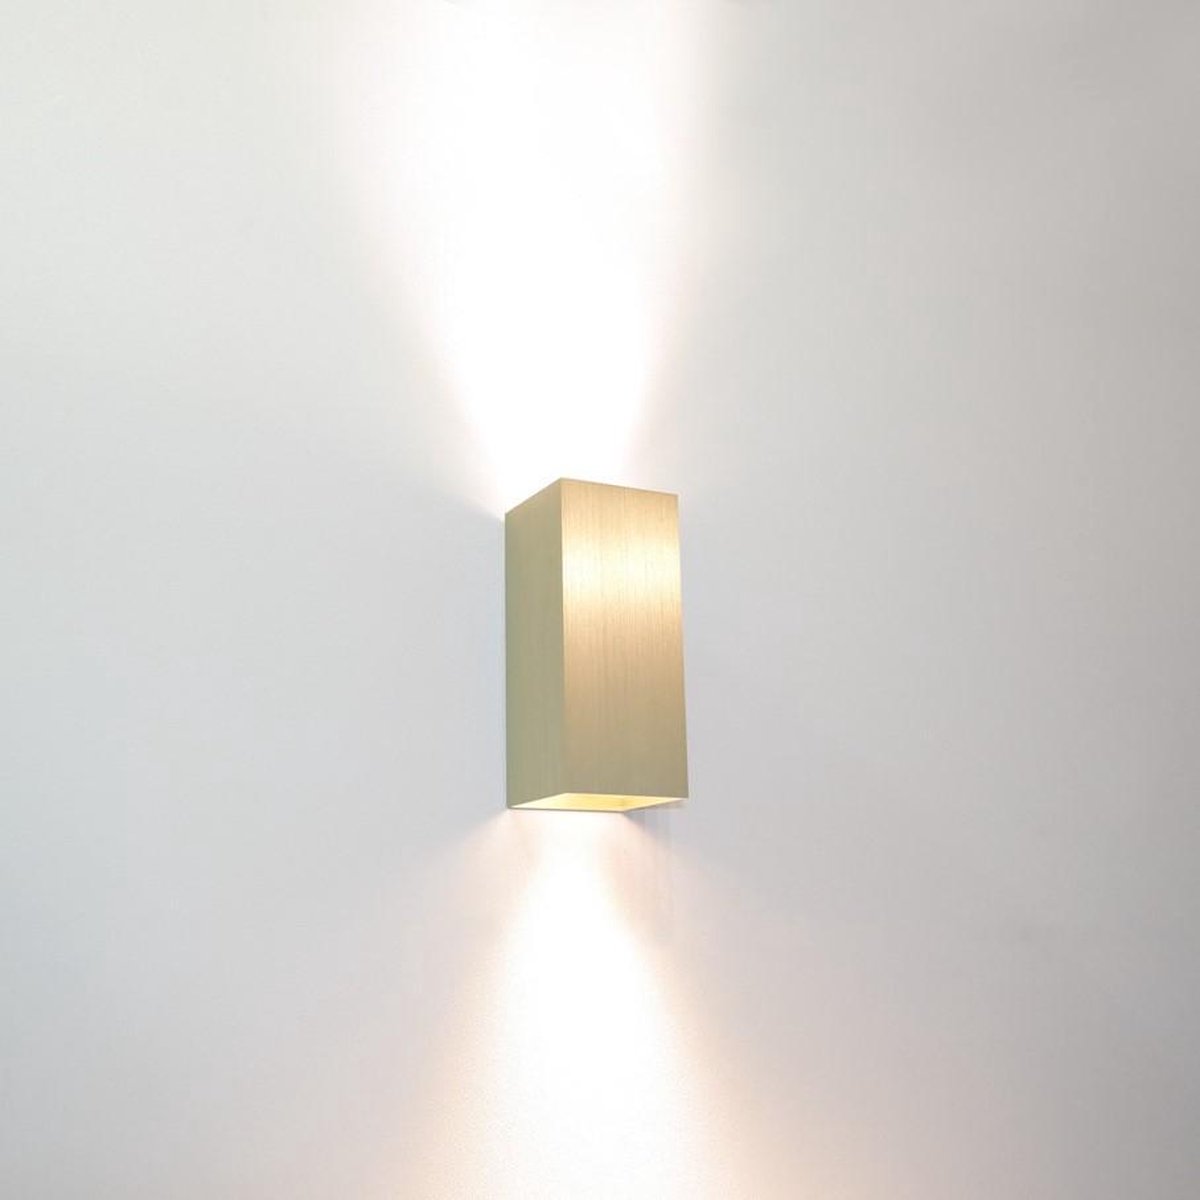 Wandlamp Dante 2 Goud - 6,6x6,6x15,4cm - 2x GU10 LED 4,8W 2700K 355lm - IP20 - Dimbaar > wandlamp goud | wandlamp binnen goud | wandlamp hal goud | wandlamp woonkamer goud | wandlamp slaapkamer goud | led lamp goud | sfeer lamp goud